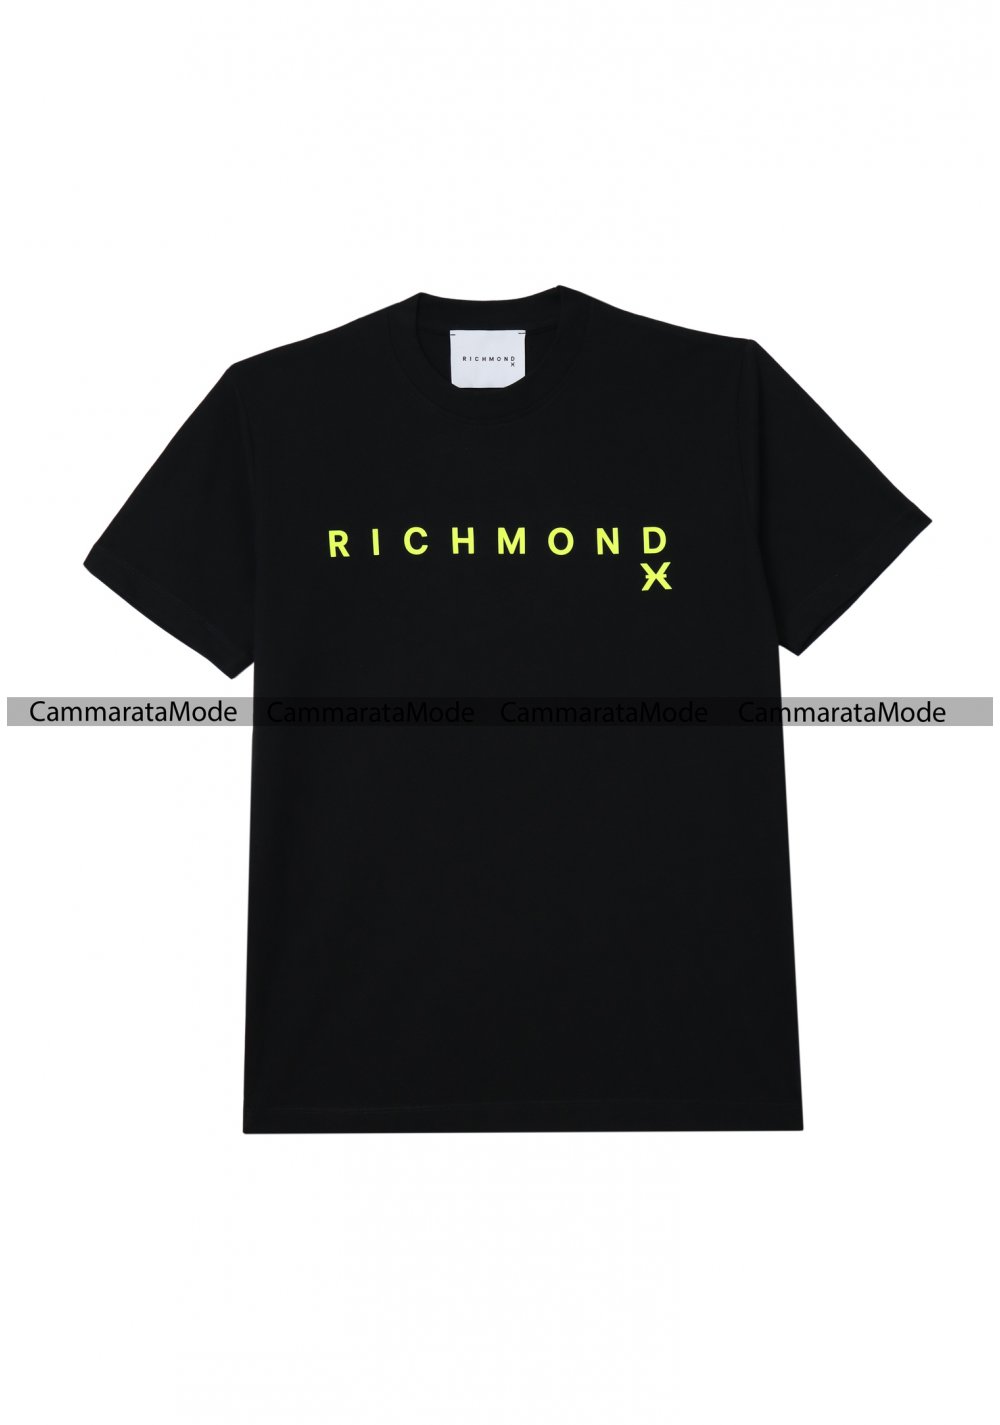 Richmond uomo t-shirt nera, maniche corte in cotone